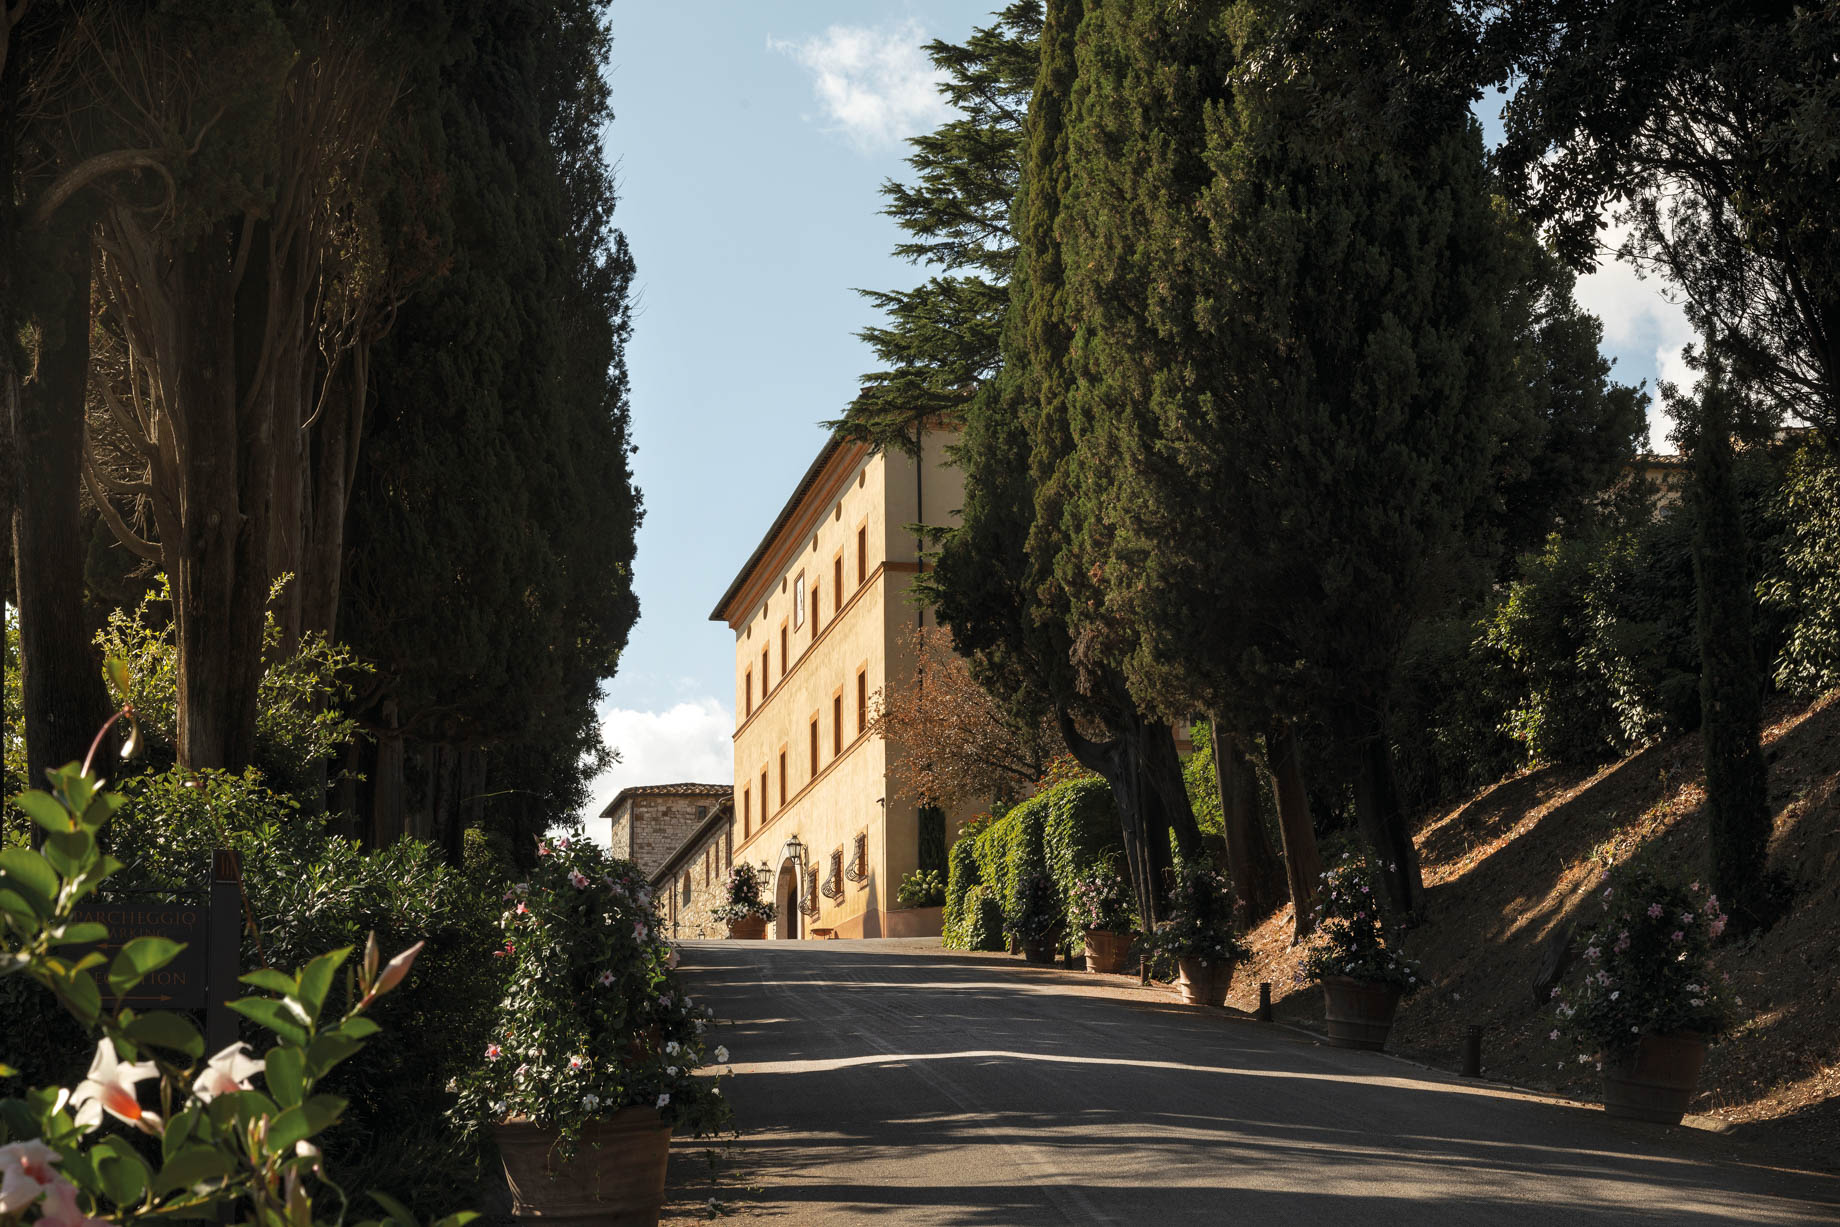 Castello di Casole, A Belmond Hotel, Tuscany – Casole d’Elsa, Italy – Arrival